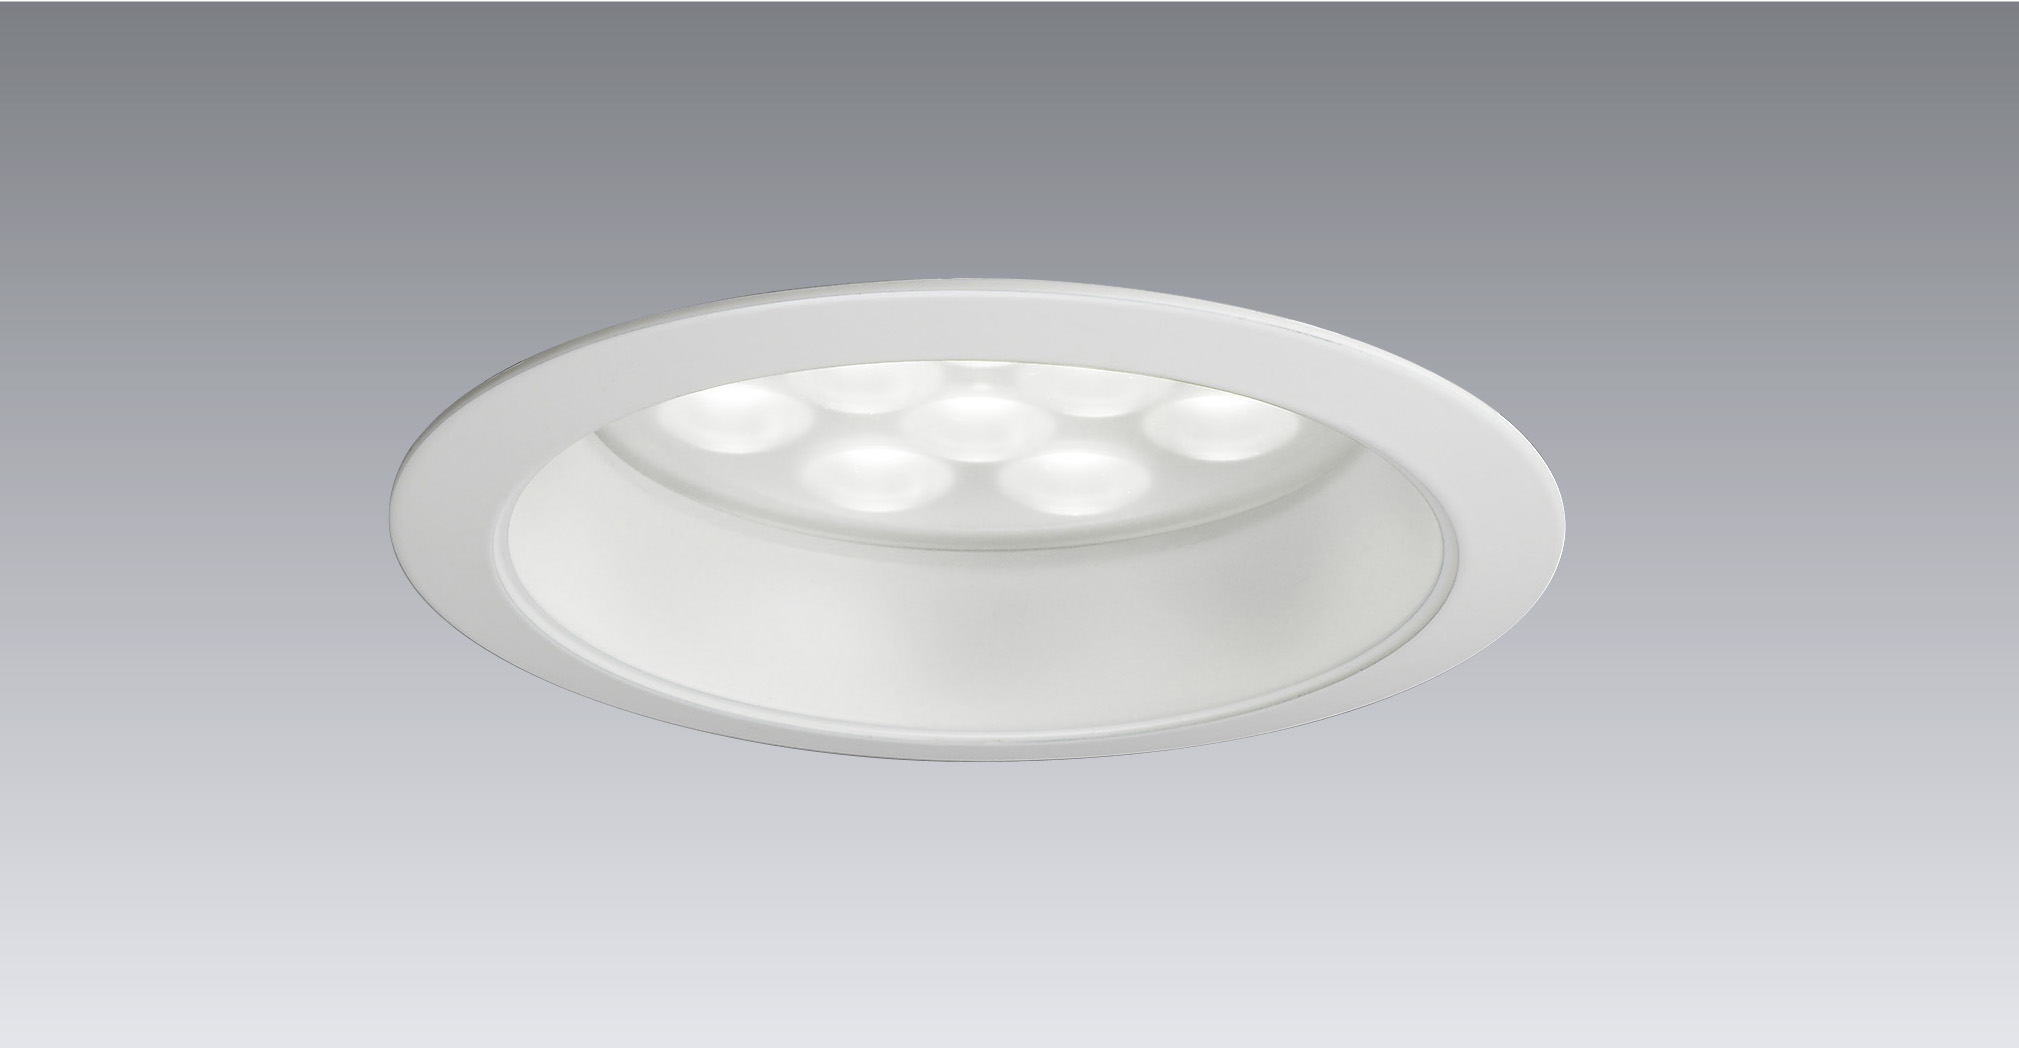 EVERLEDS 「高効率型100形LEDダウンライト」 新発売｜パナソニック電工株式会社のプレスリリース